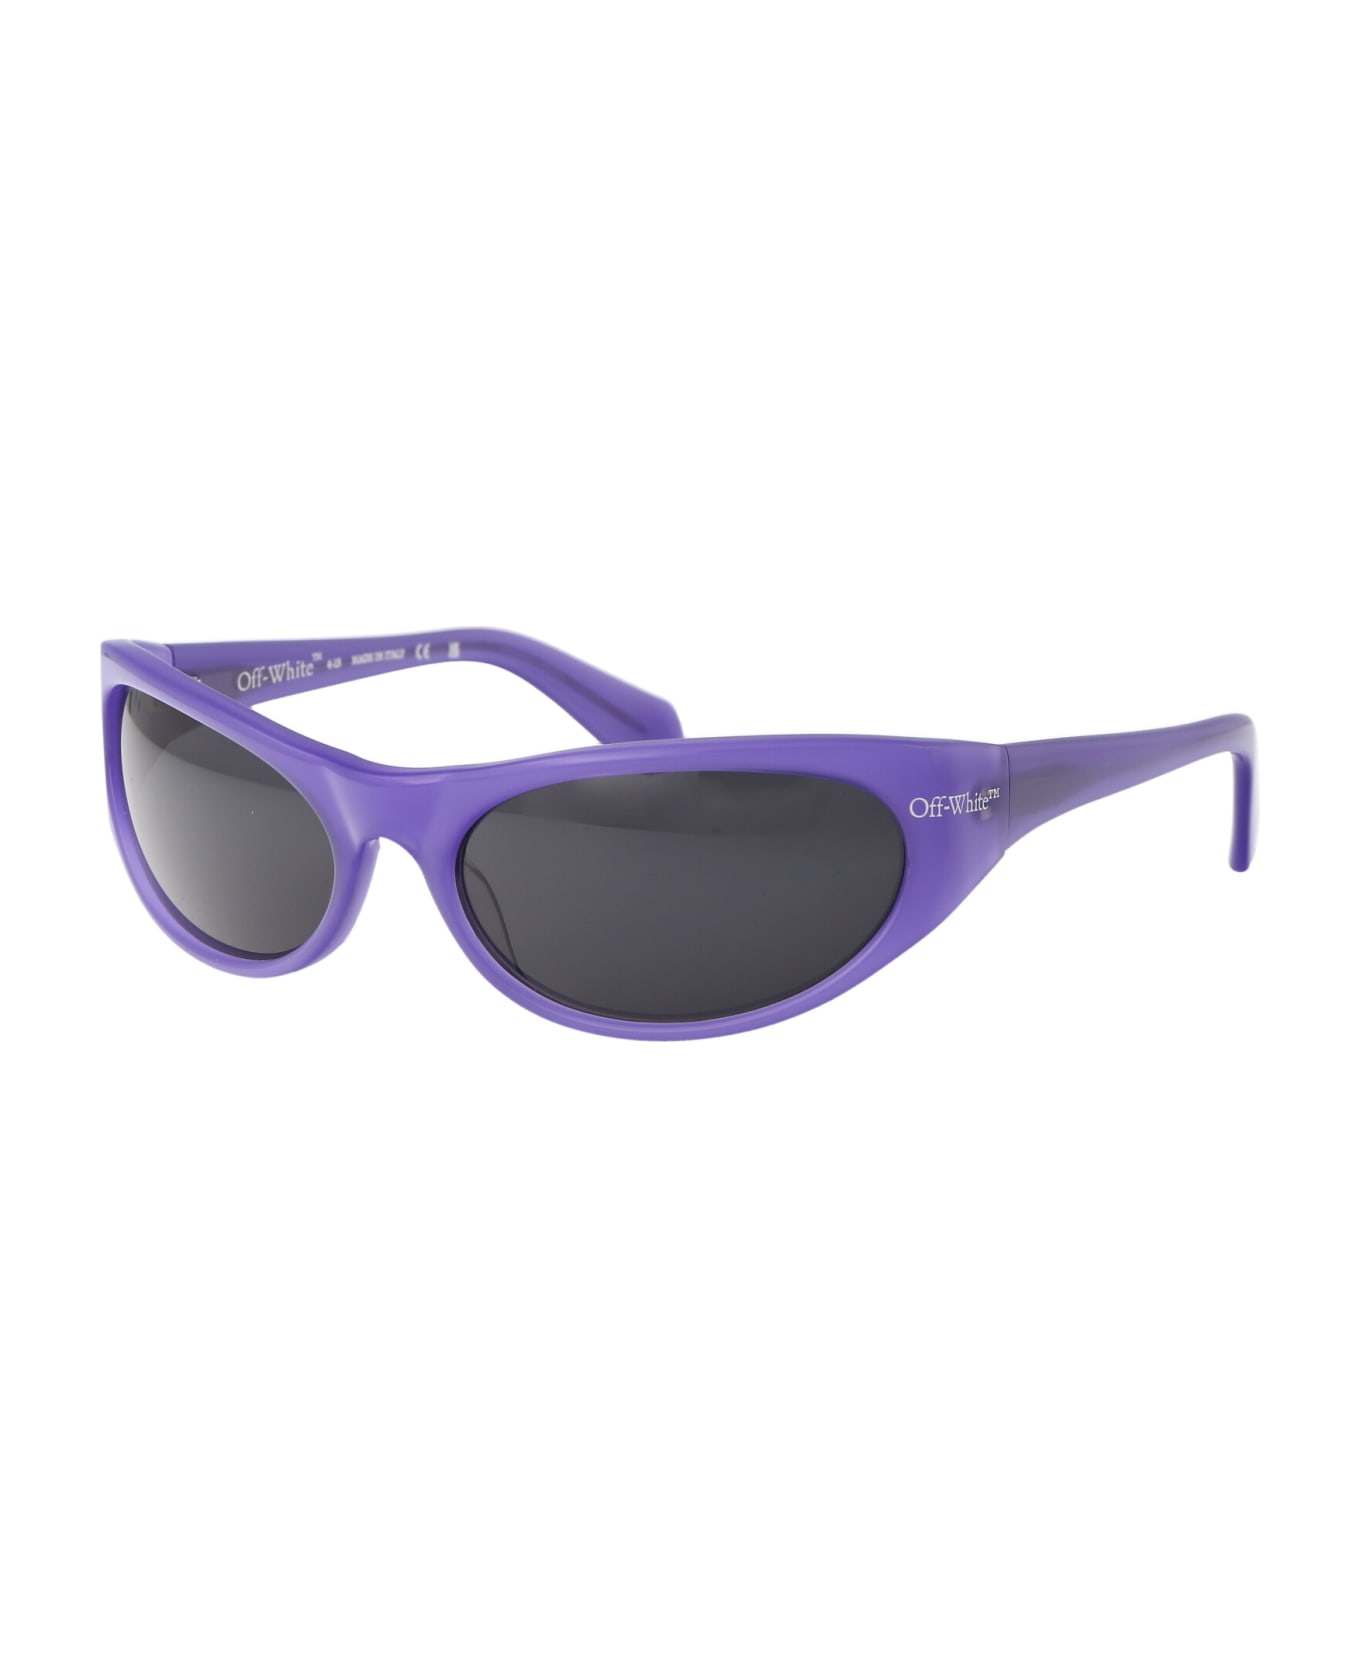 Off-White Napoli Sunglasses - 3707 PURPLE